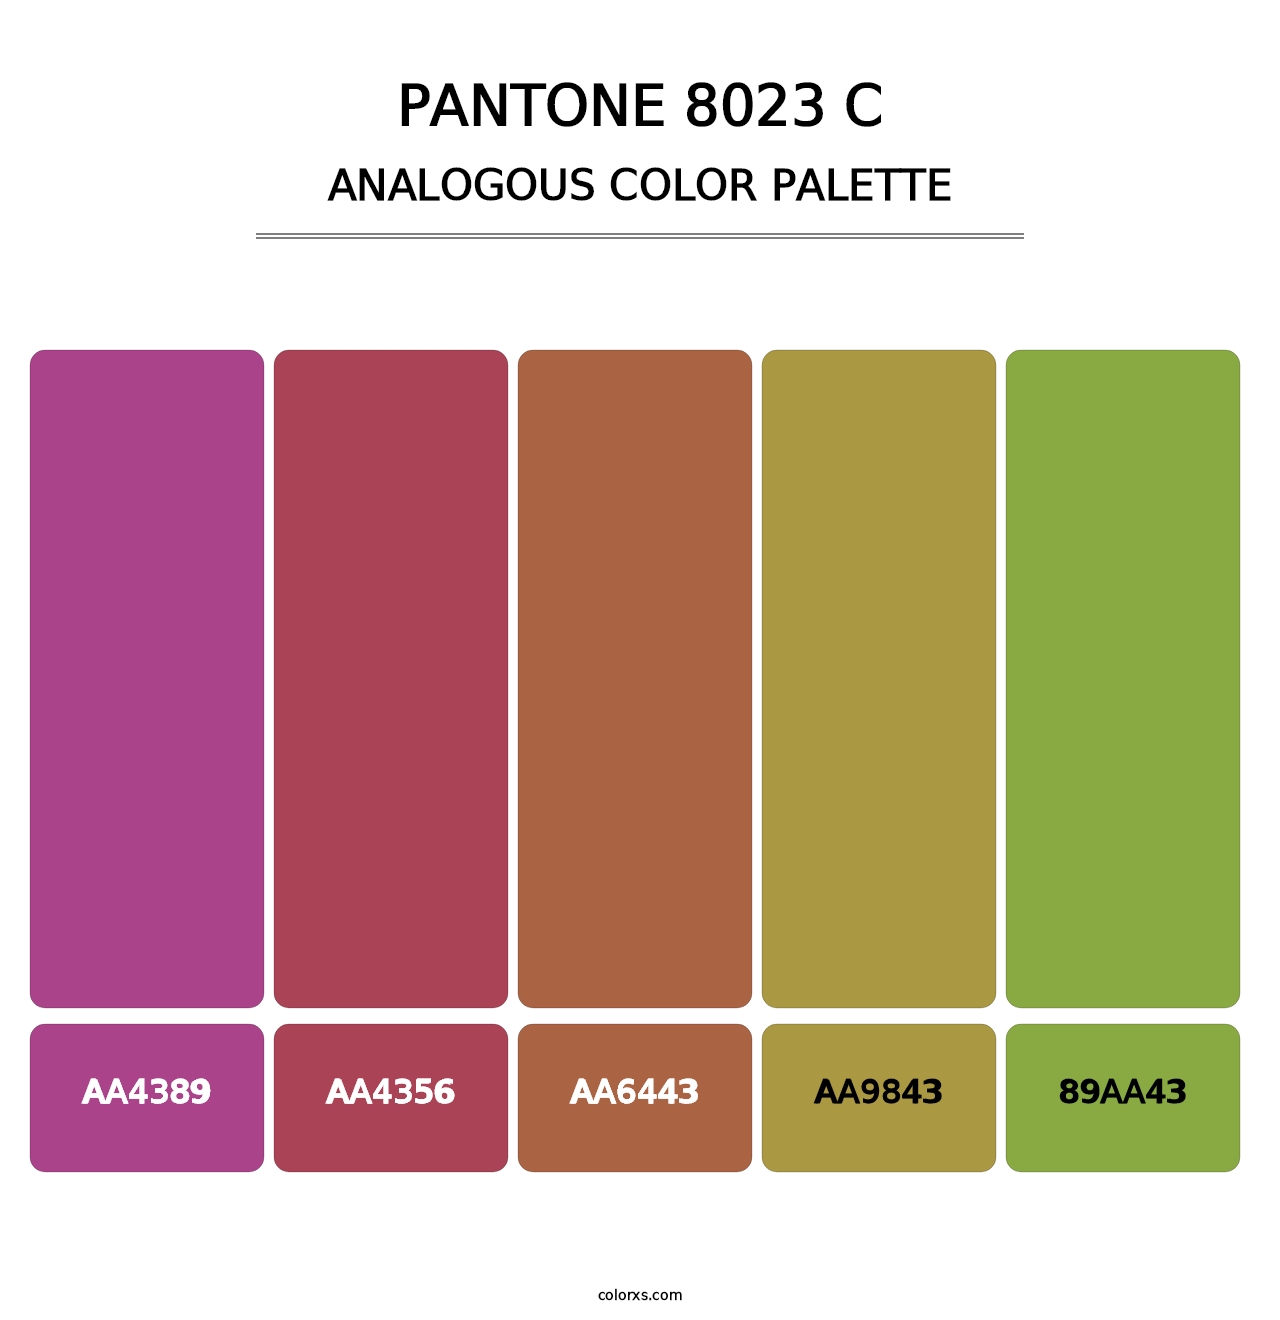 PANTONE 8023 C - Analogous Color Palette